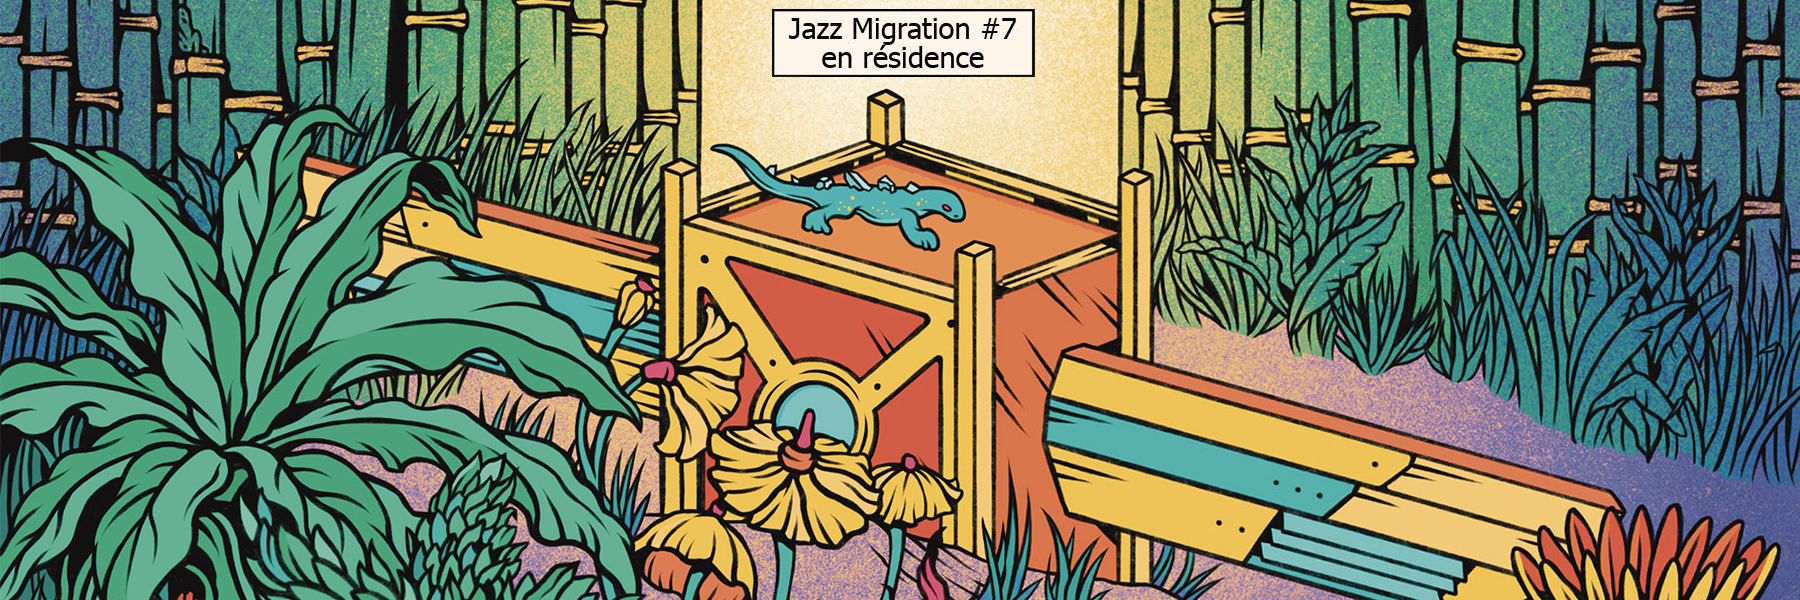 Lire la suite à propos de l’article Jazz Migration #7 en résidence